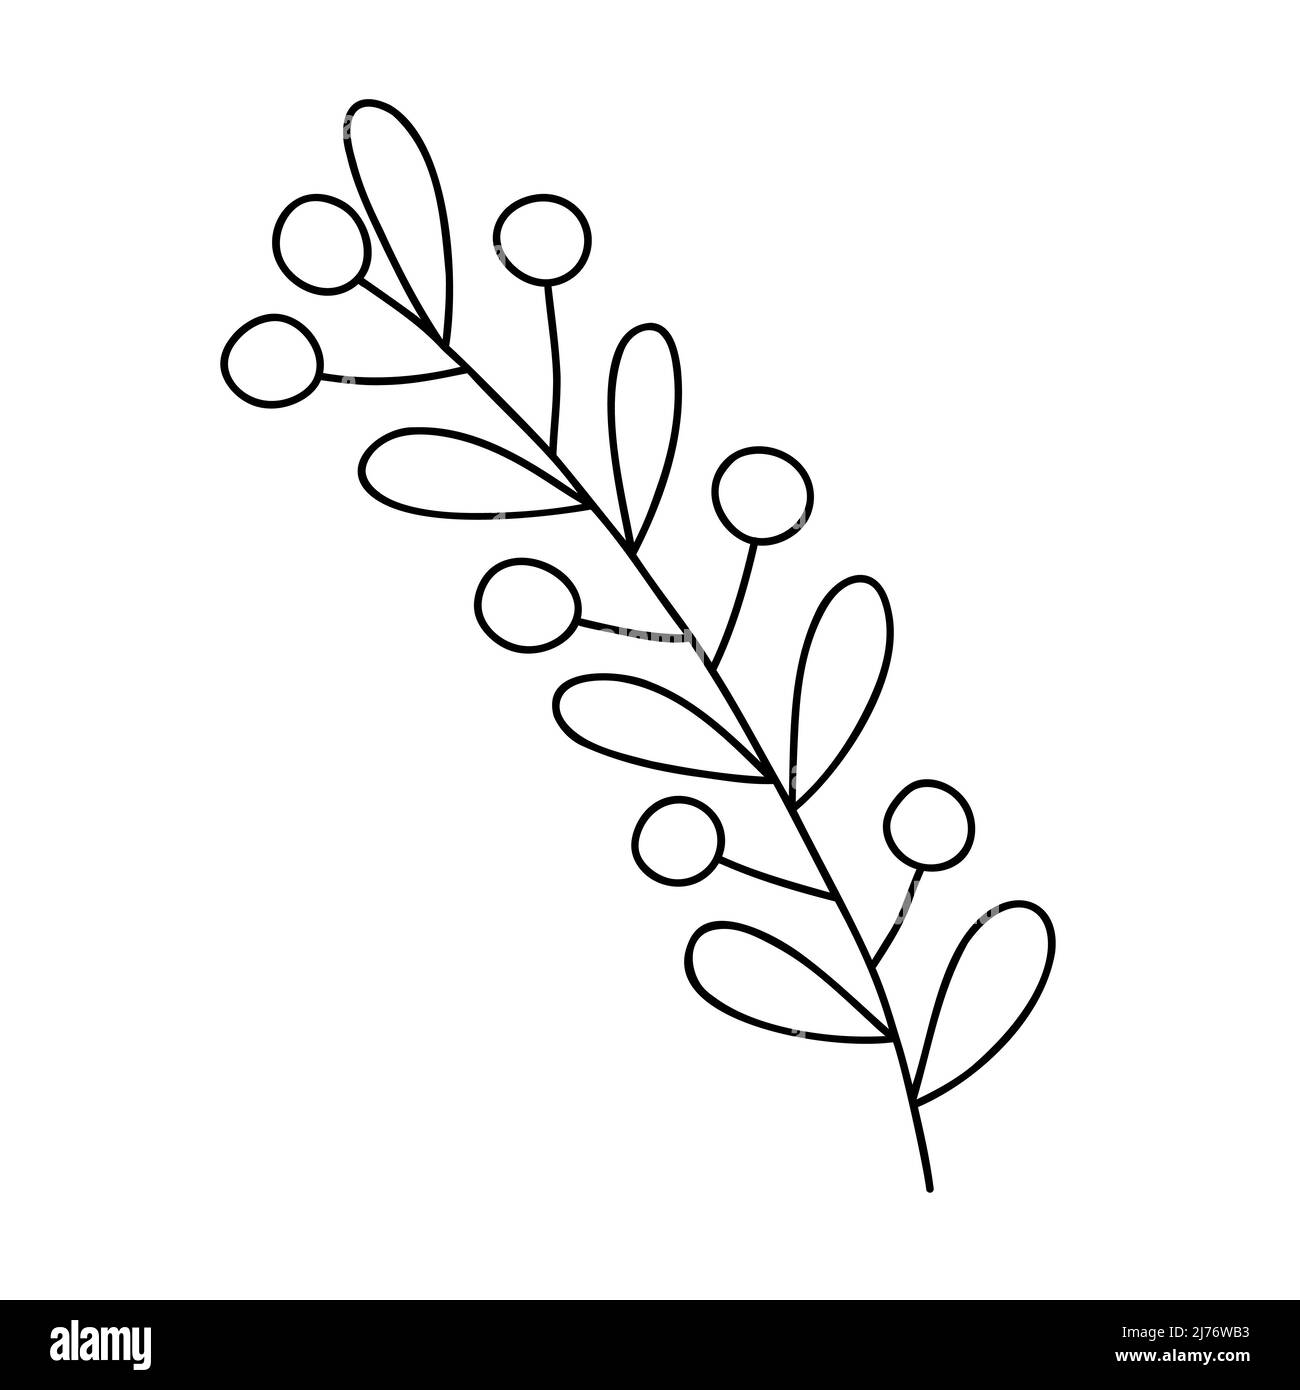 Umriss Pflanze dekorativen Zweig mit Blättern und Beeren für Wohnkultur, festliche Feiertagsarrangement, Vektor-Illustration für saisonale Grußkarte, i Stock Vektor